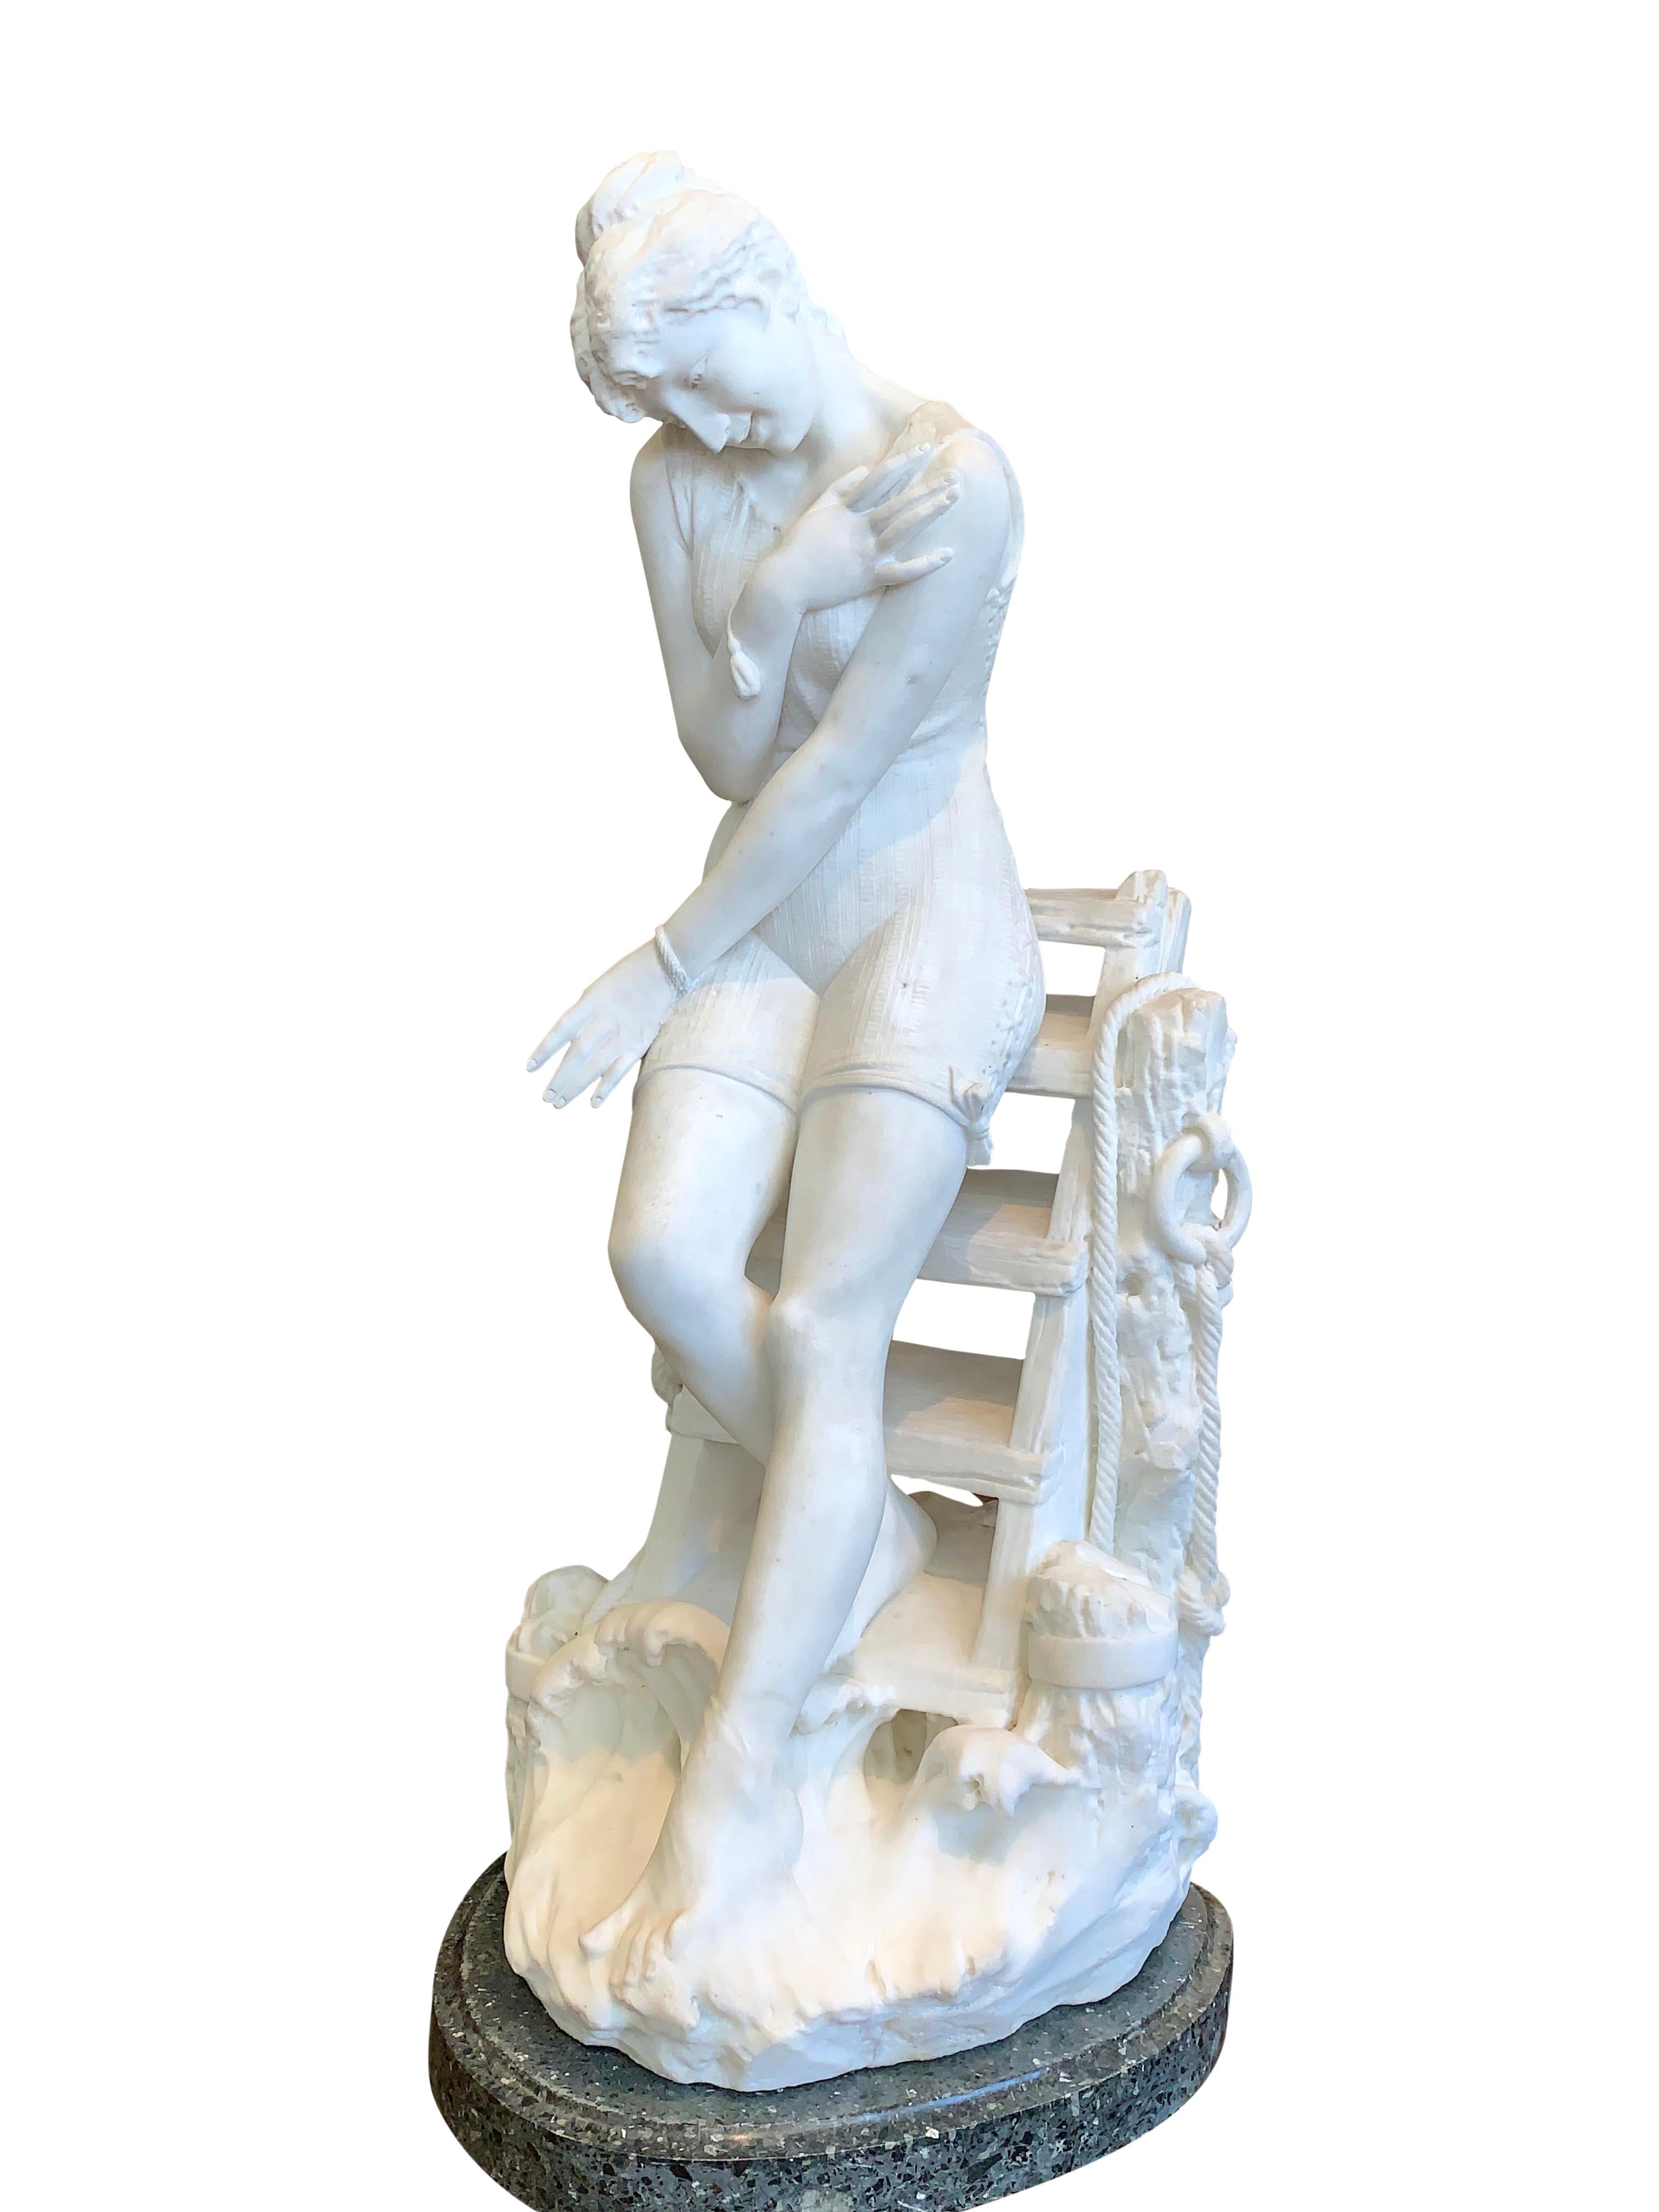 Magnifique grande figure en marbre sculpté italien du XIXe siècle représentant une jeune femme portant un maillot de bain à lacets, descendant d'un vieux quai pour tester la température de l'eau avec ses orteils. Élevé sur son piédestal original en